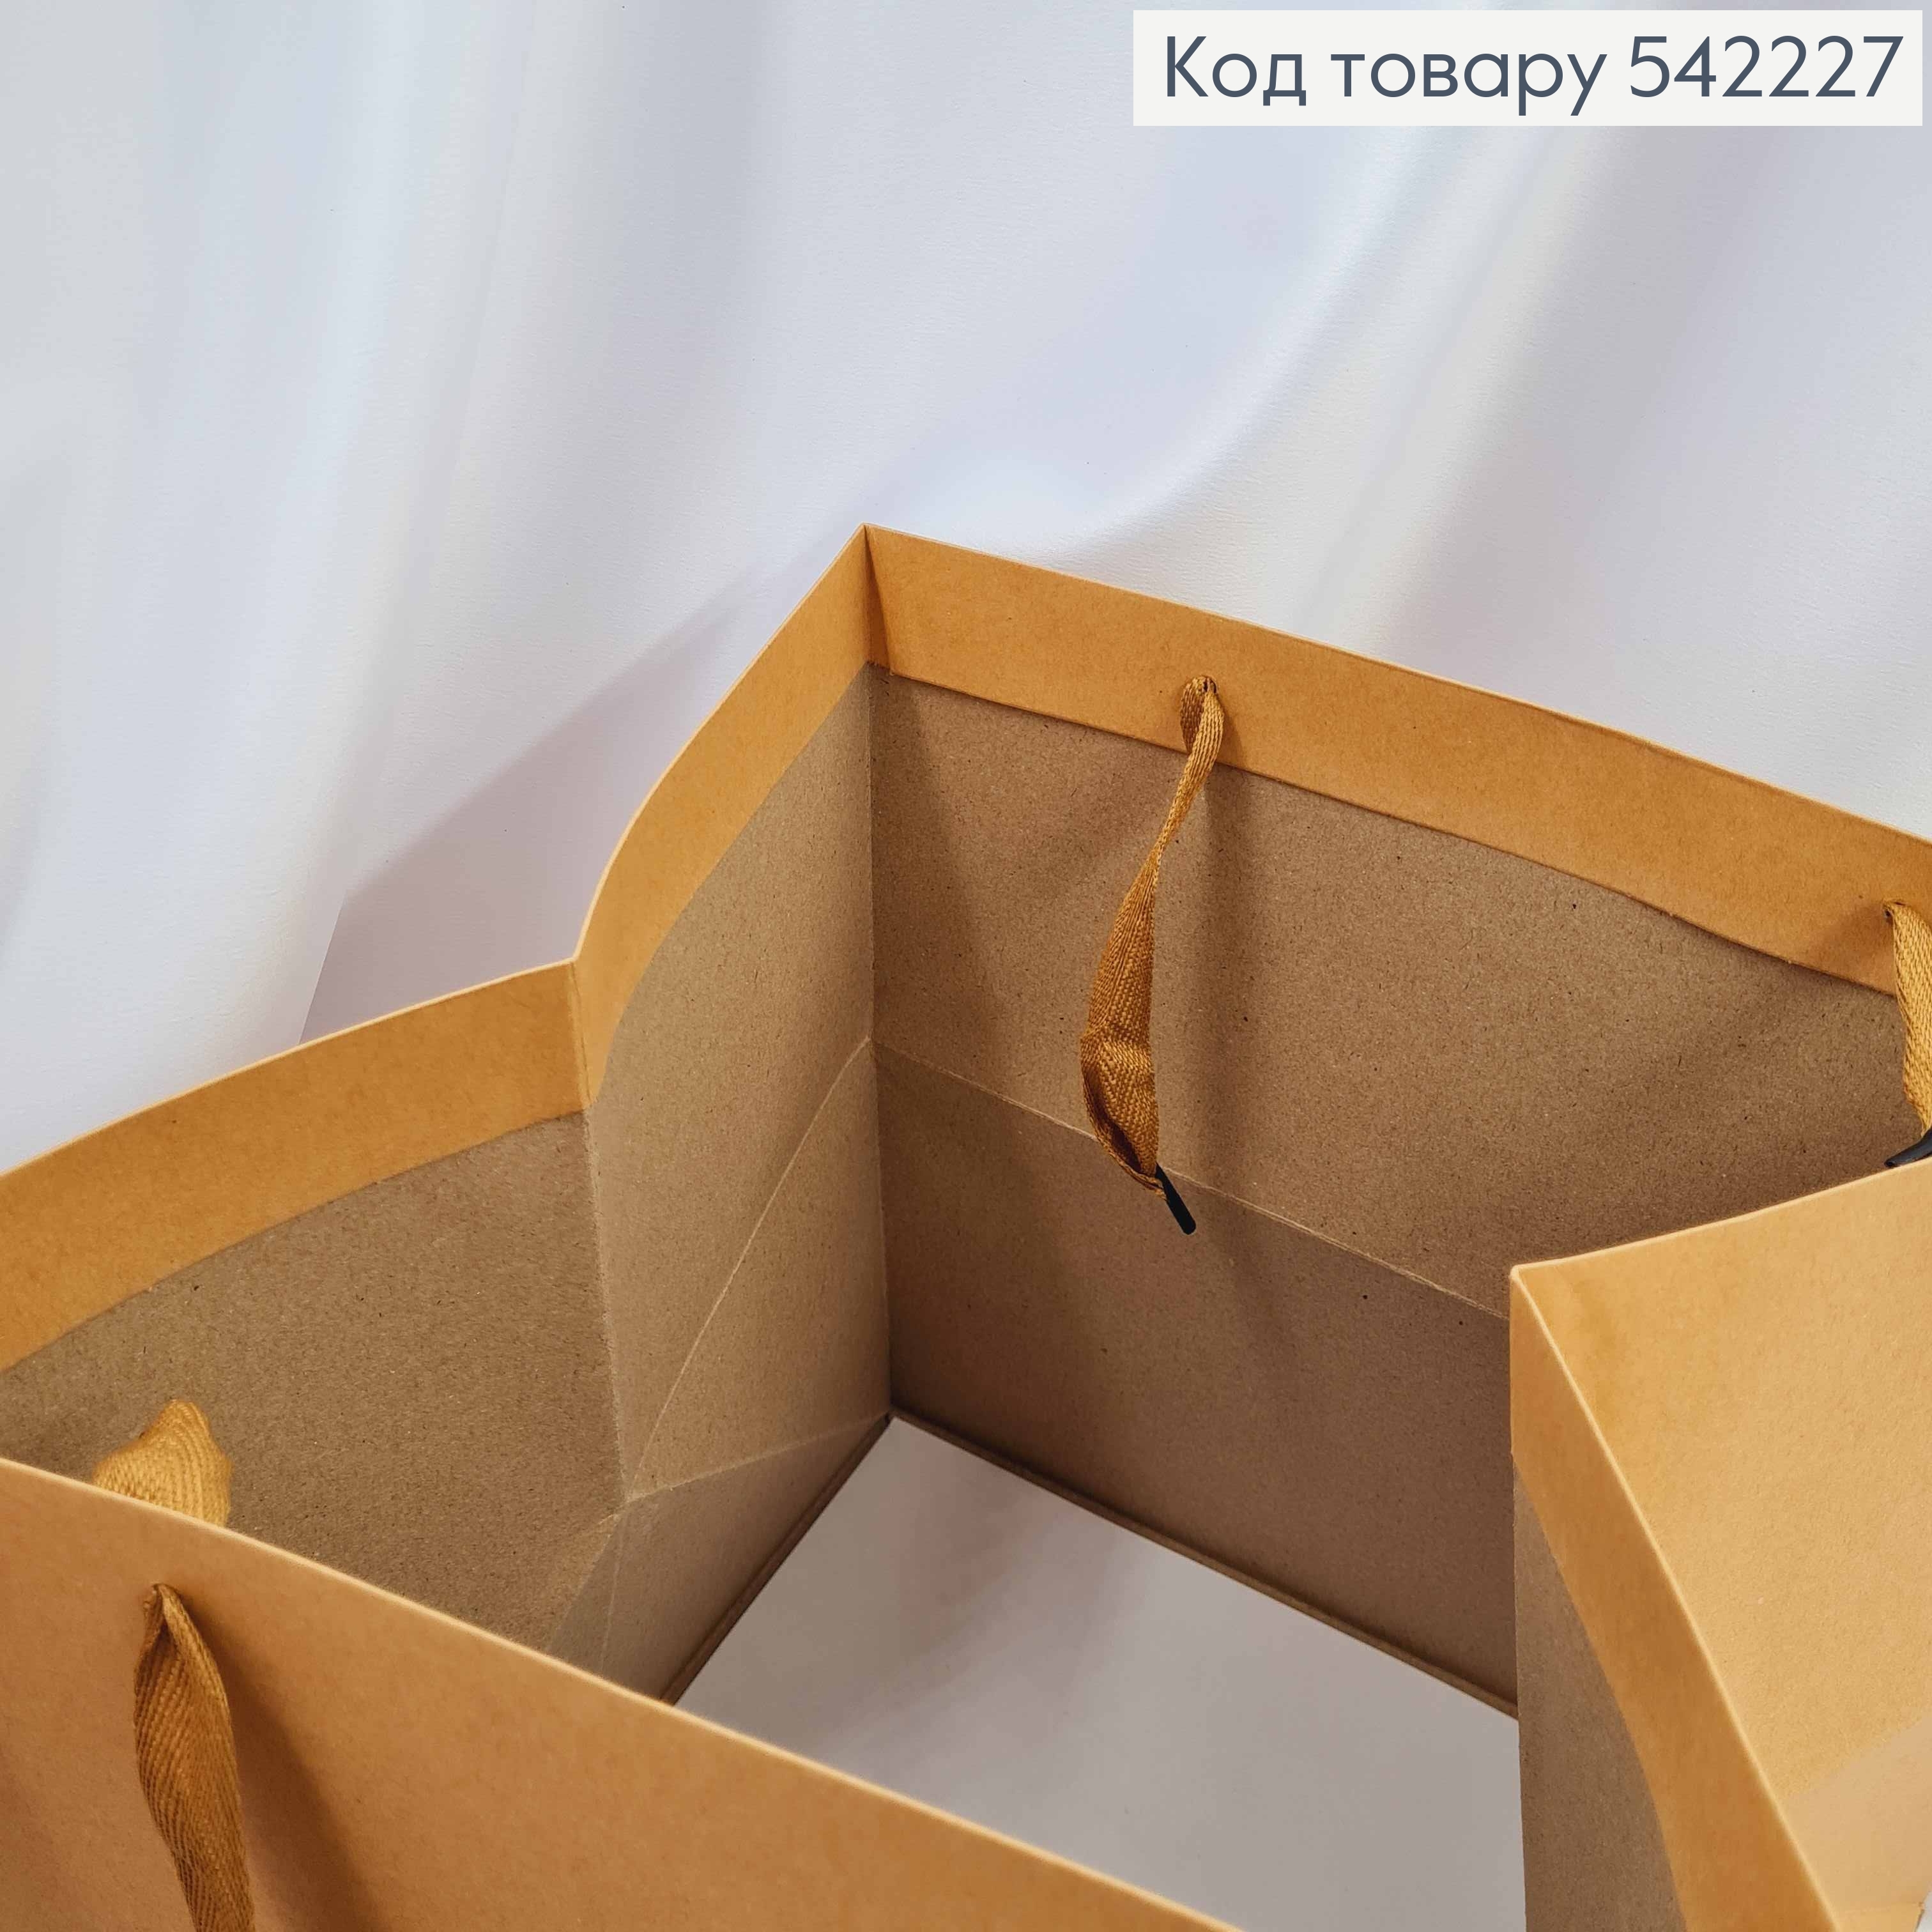 Пакет куб, якісний з твердого картону (30*30*30см) 542227 фото 2